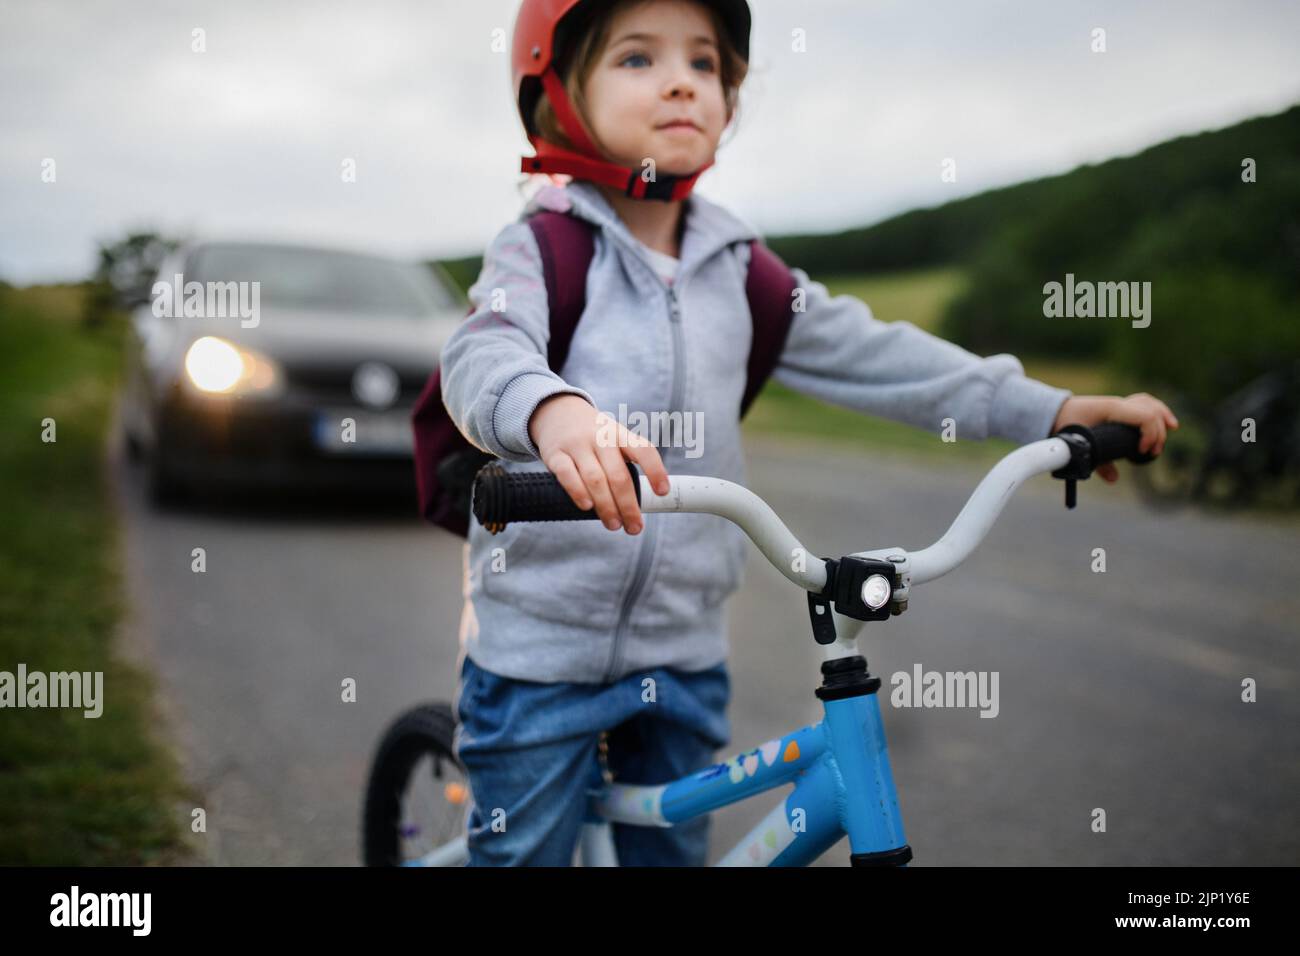 Retrato de una niña emocionada montando en bicicleta por carretera con el coche detrás de ella, concepto de educación en seguridad vial. Foto de stock